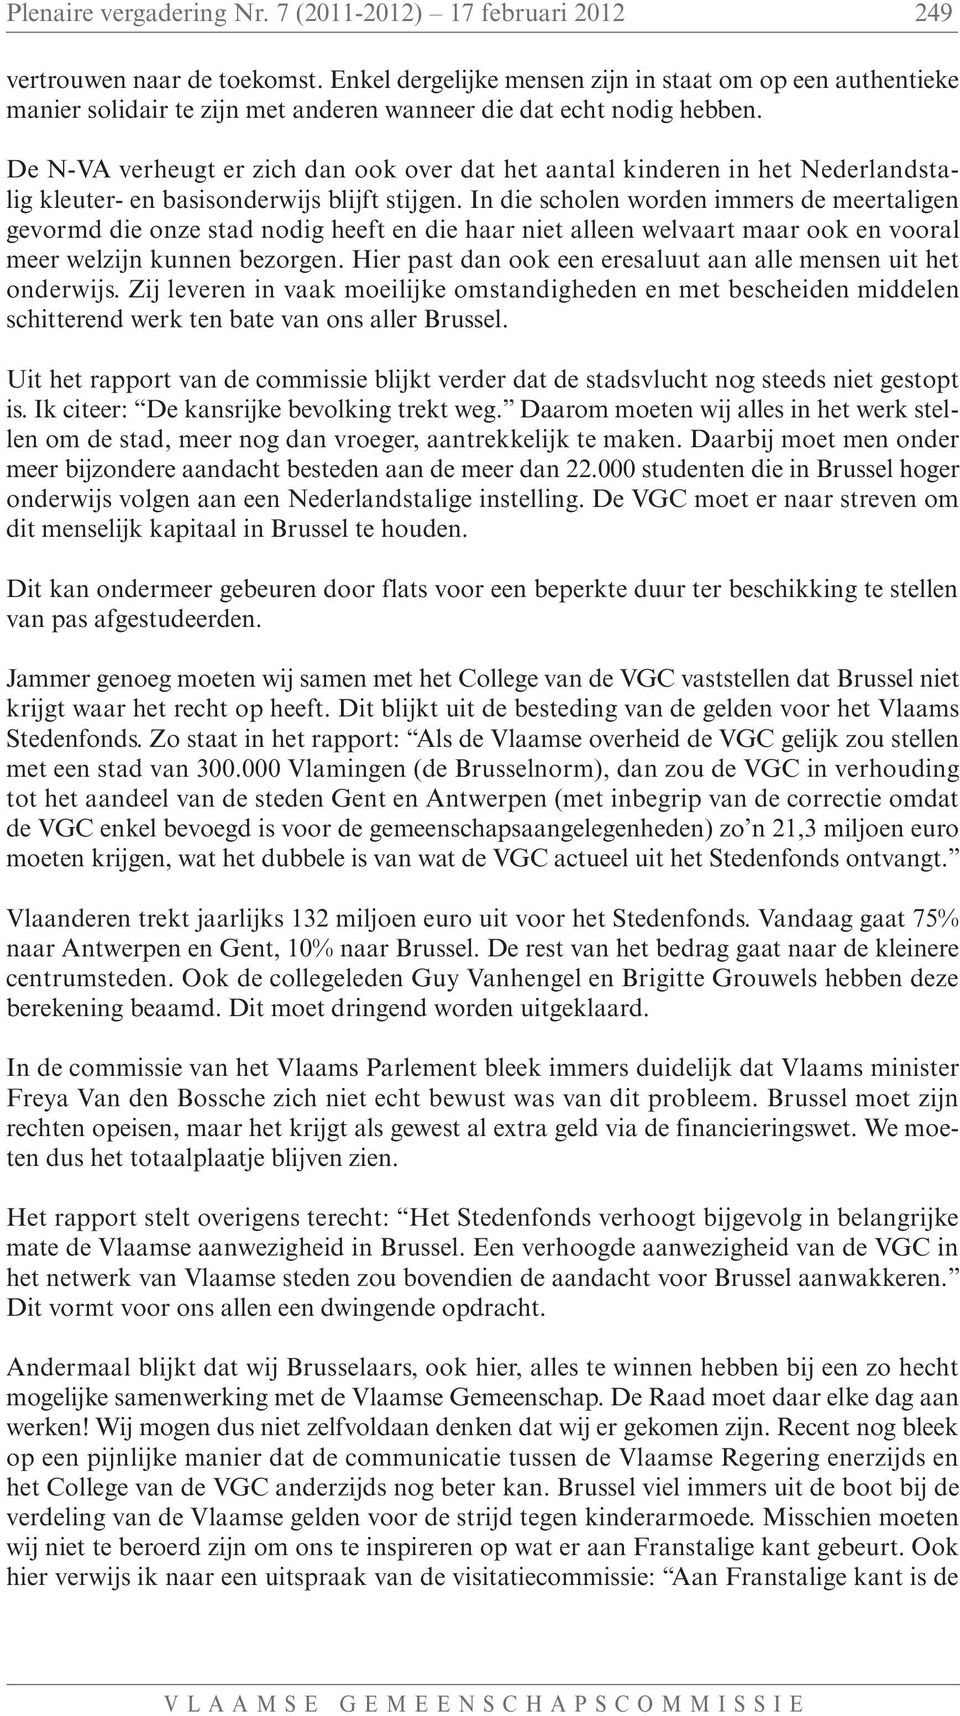 De N-VA verheugt er zich dan ook over dat het aantal kinderen in het Nederlandstalig kleuter- en basisonderwijs blijft stijgen.